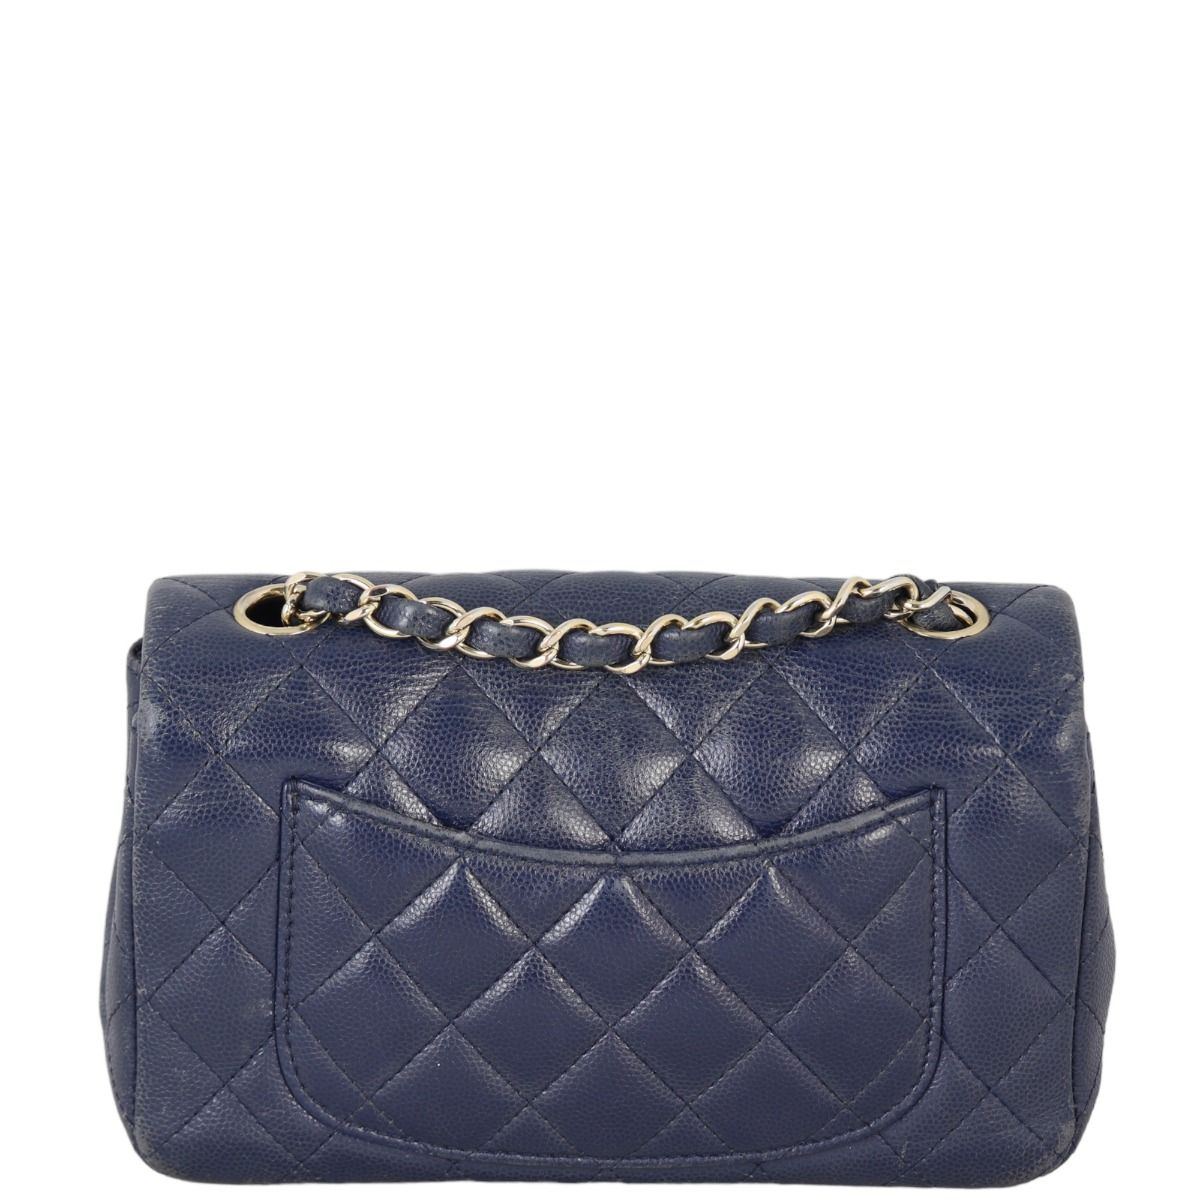 Chanel Classic Flap Mini Rectangular Bag